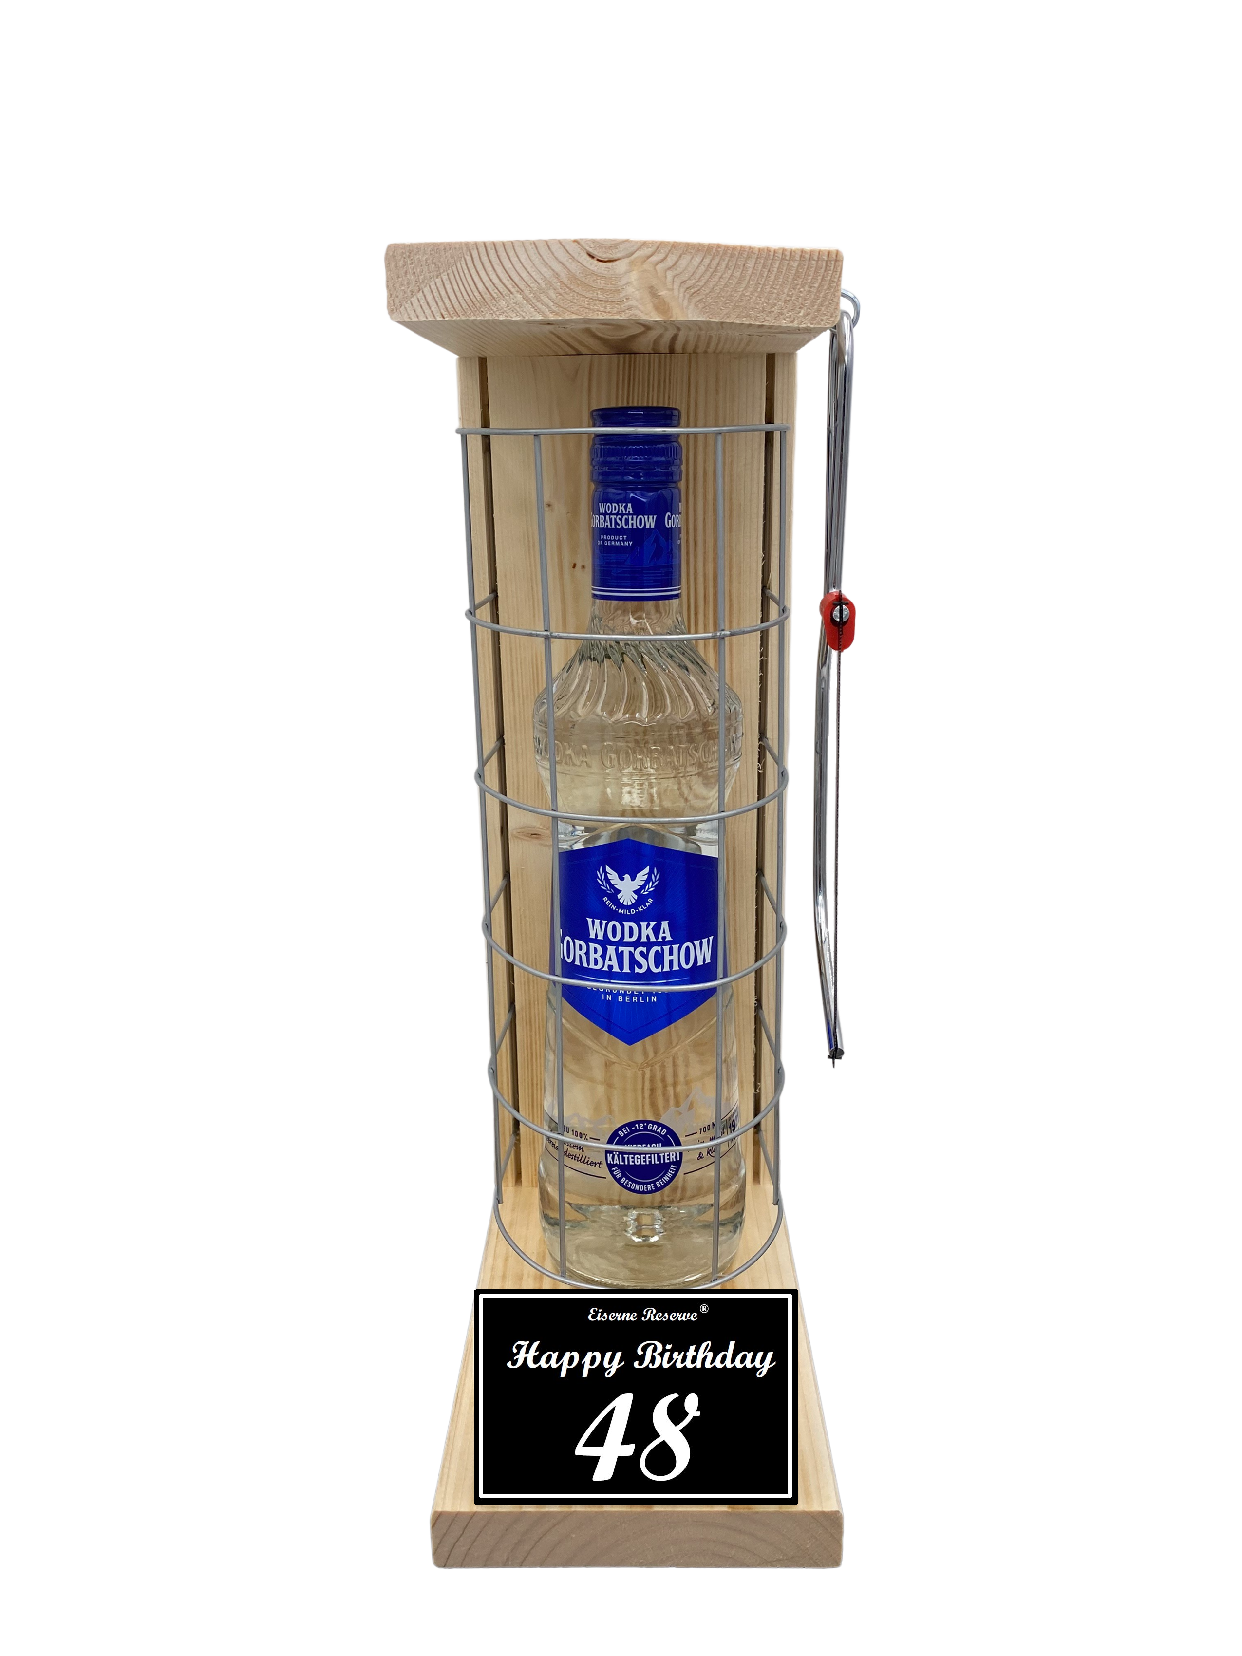 Wodka Geschenk zum 48 Geburtstag - Eiserne Reserve Gitterkäfig